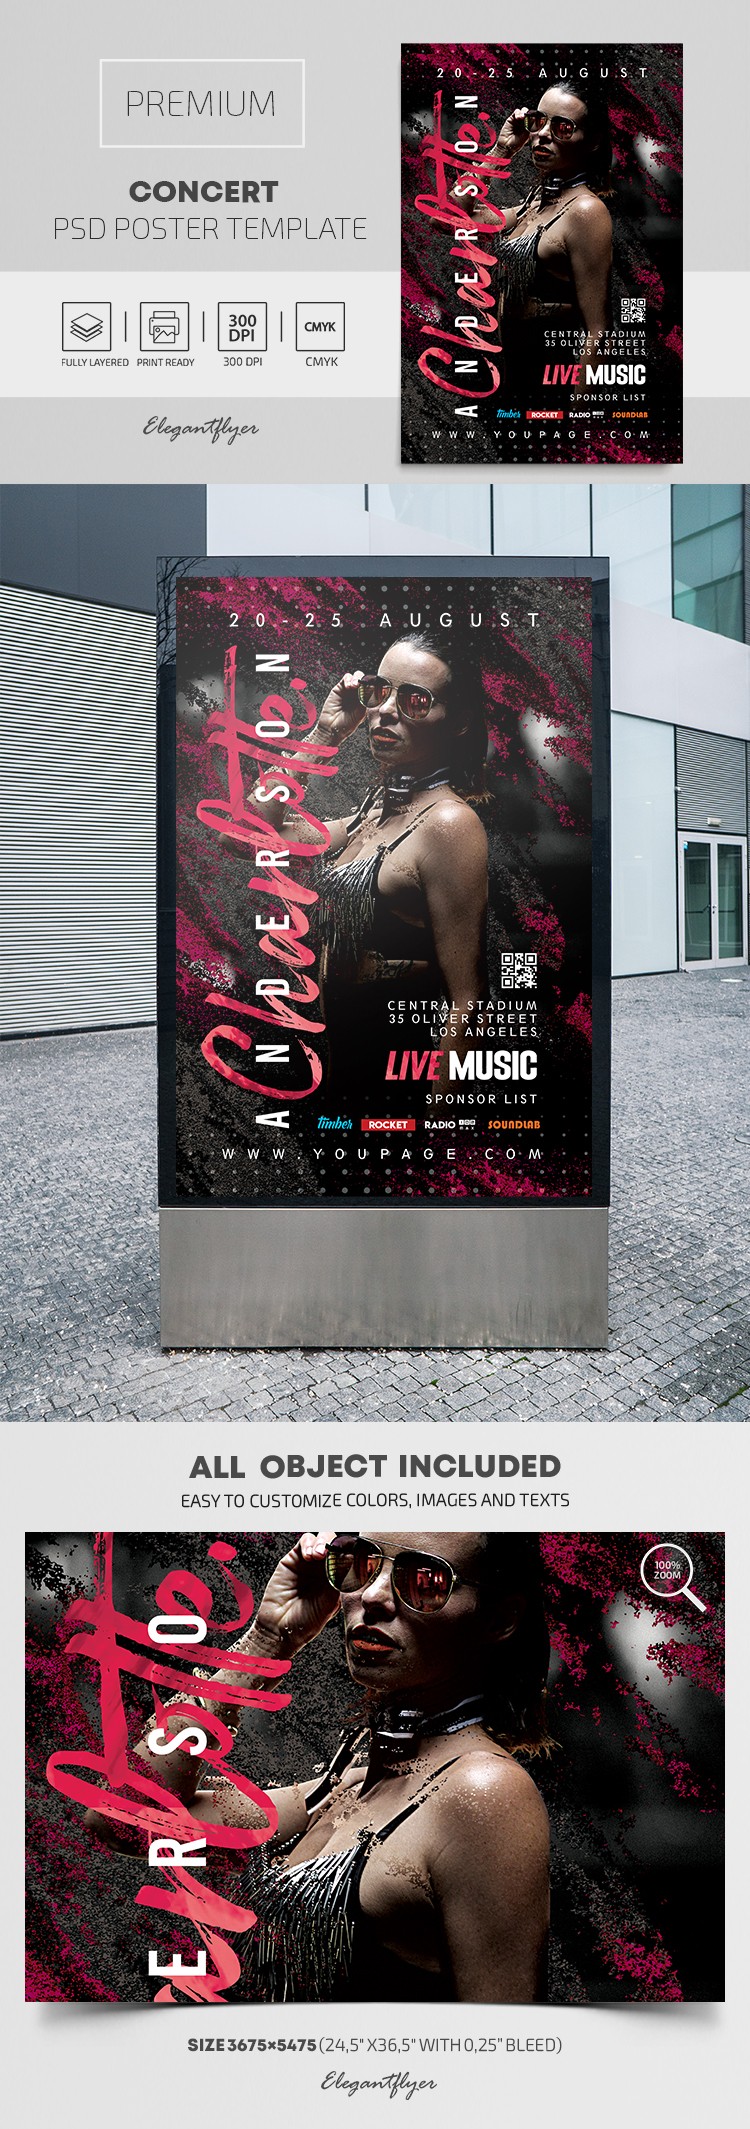 Concert Poster by ElegantFlyer